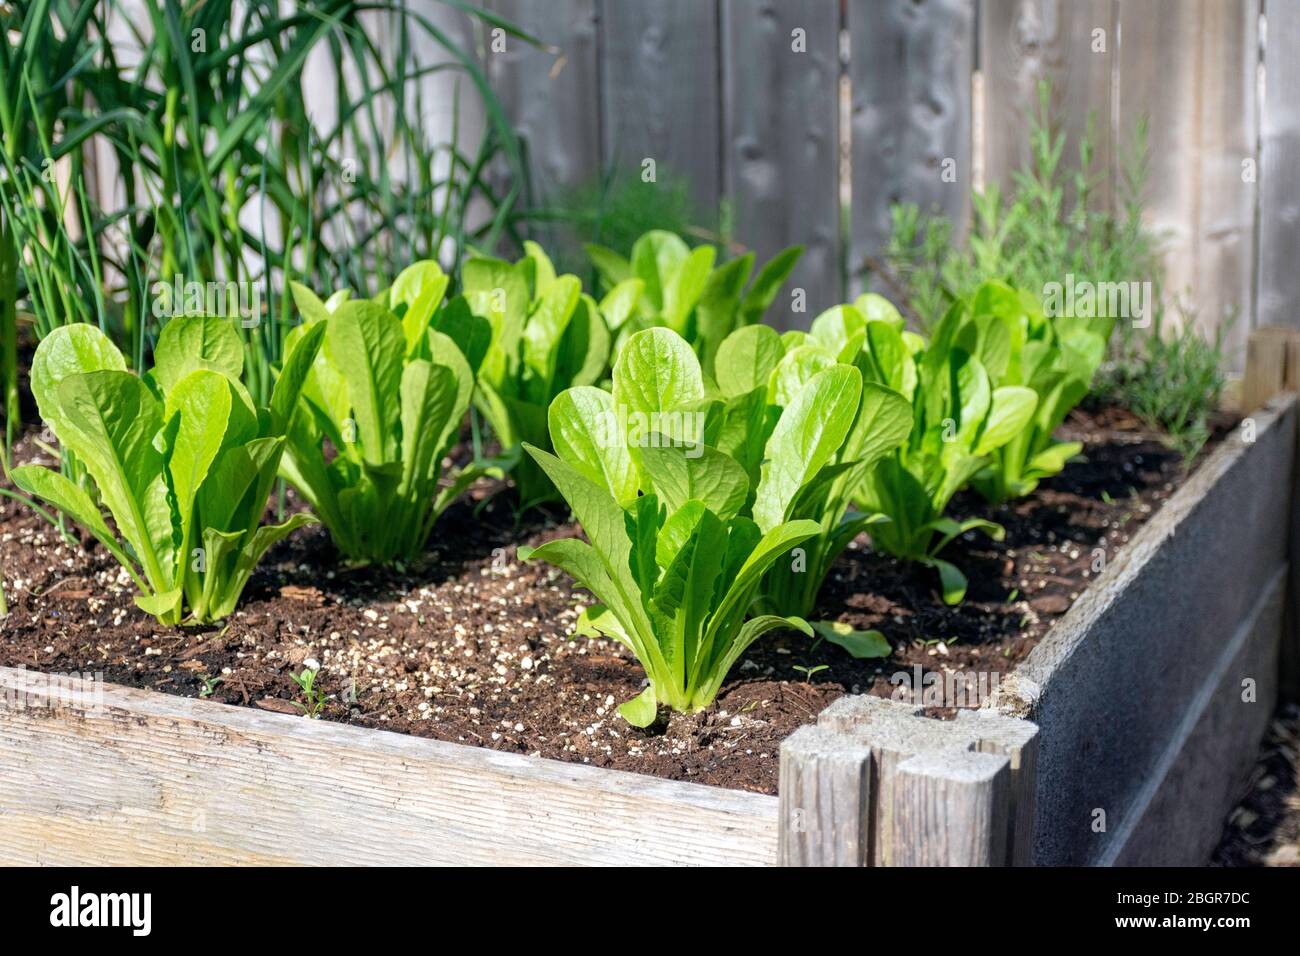 Parte della crescita della vostra propria tendenza alimentare, questo giardino di verdure cortile posteriore contiene grandi letti sopraelevati per la coltivazione di verdure ed erbe durante l'estate Foto Stock